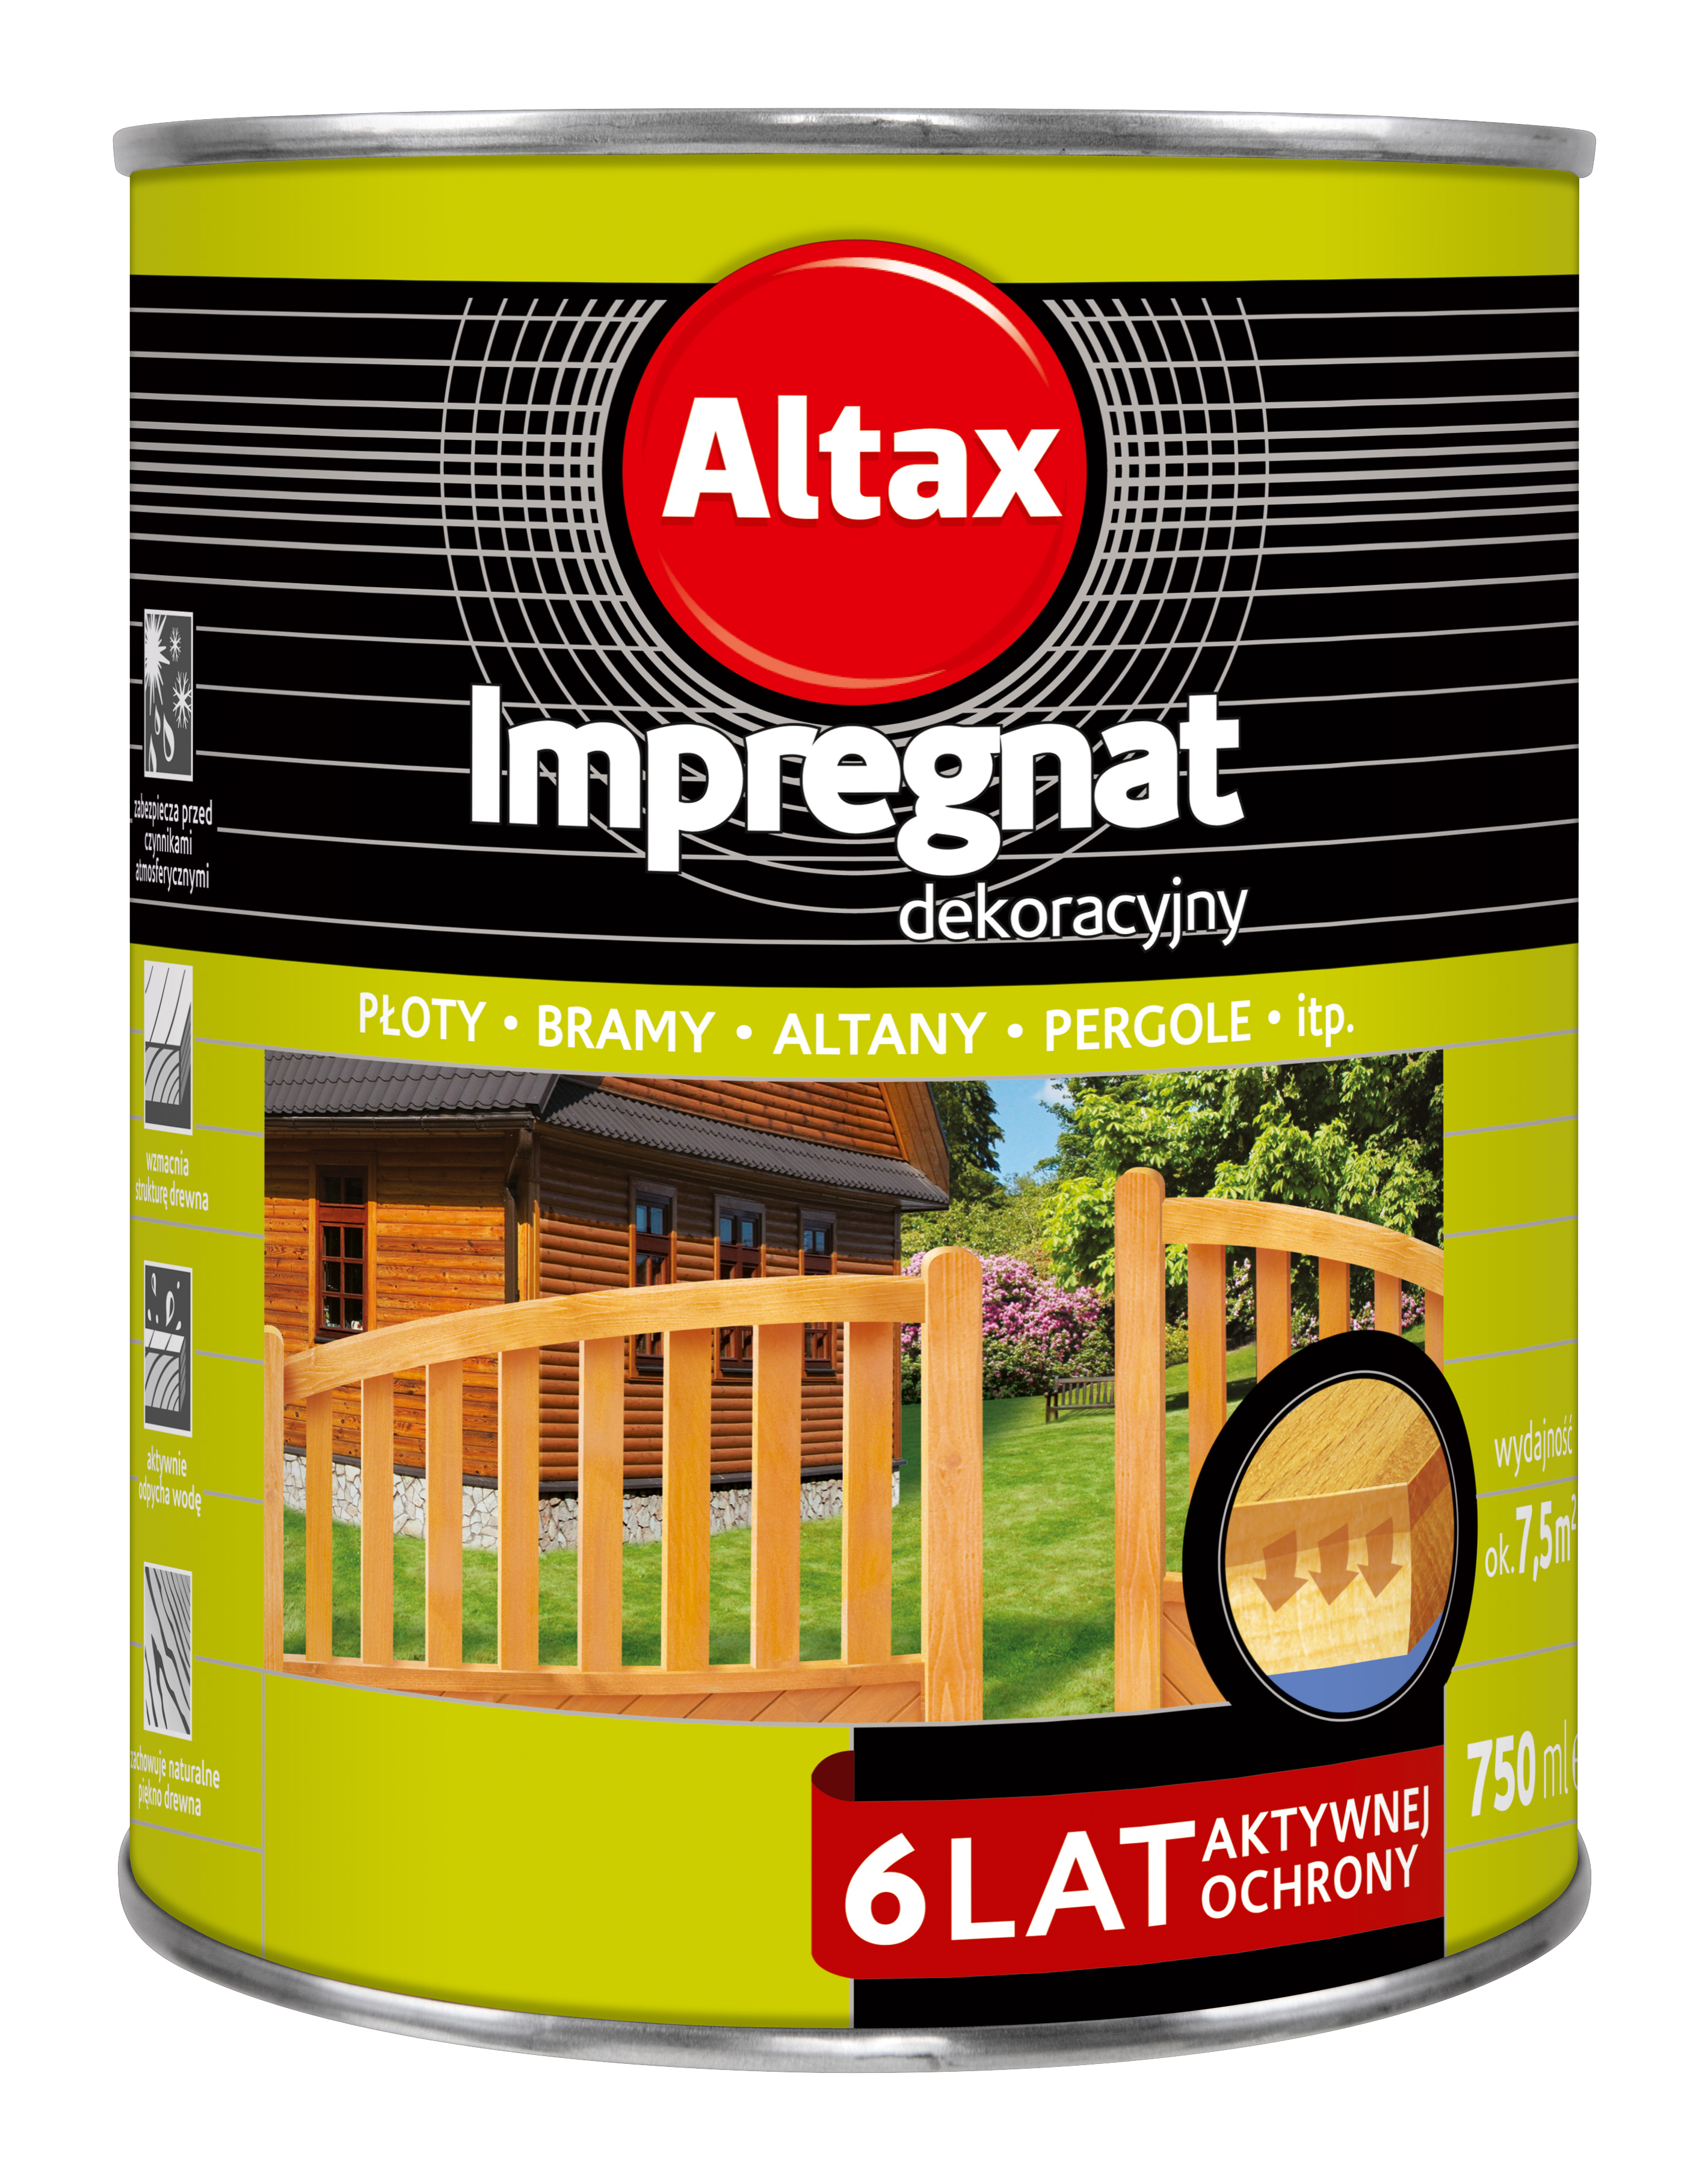 Altax_Impregnat_dekoracyjny_6_LAT_750ML_new